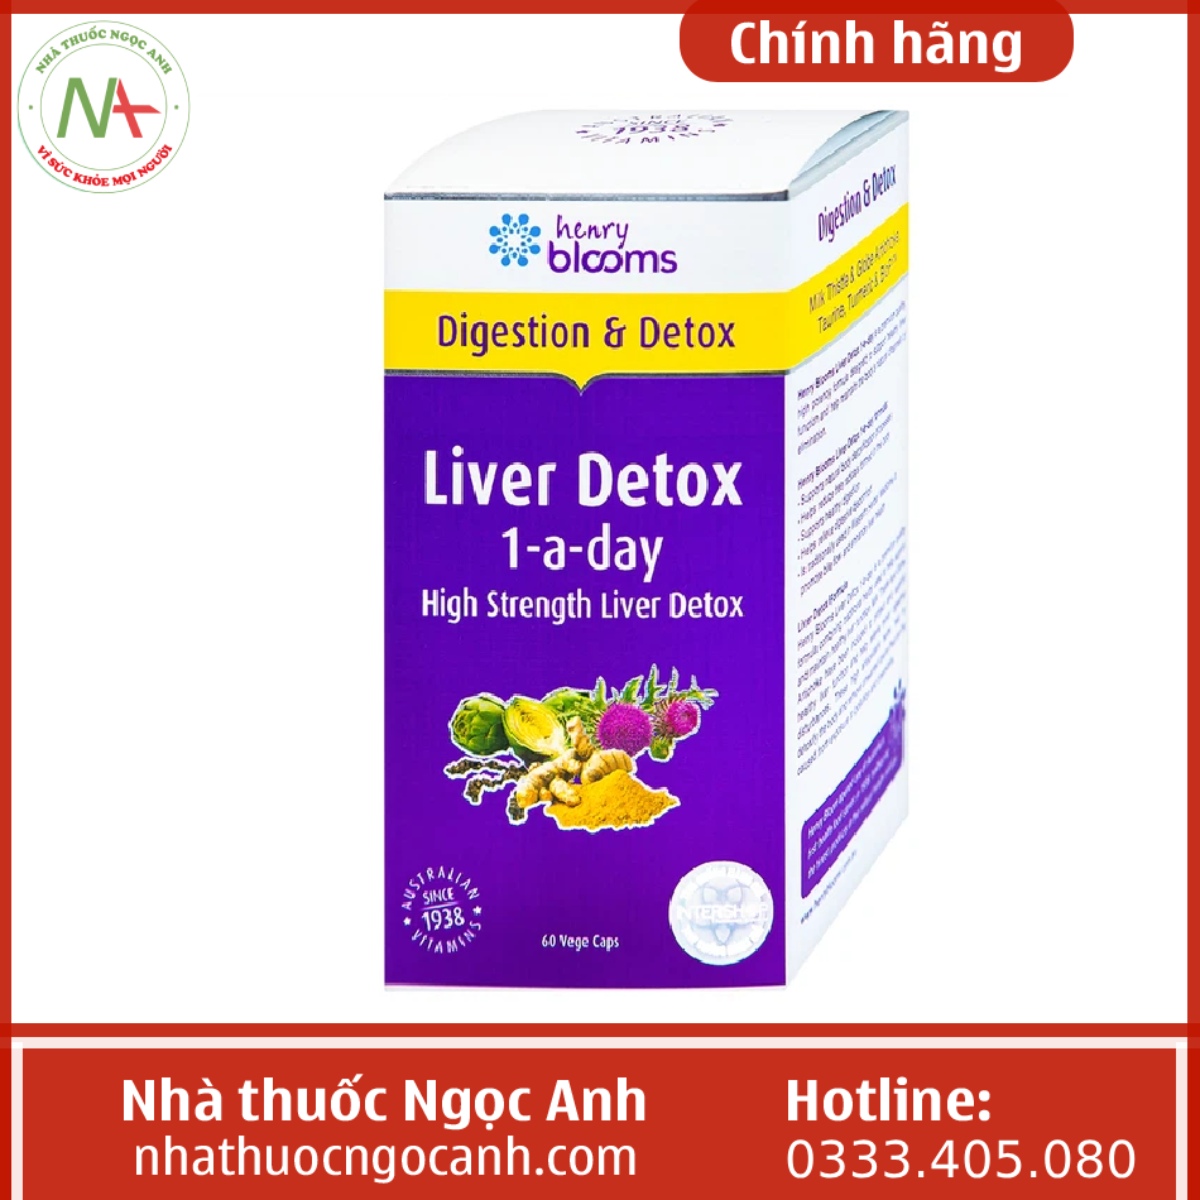 Liver Detox 1-a-day